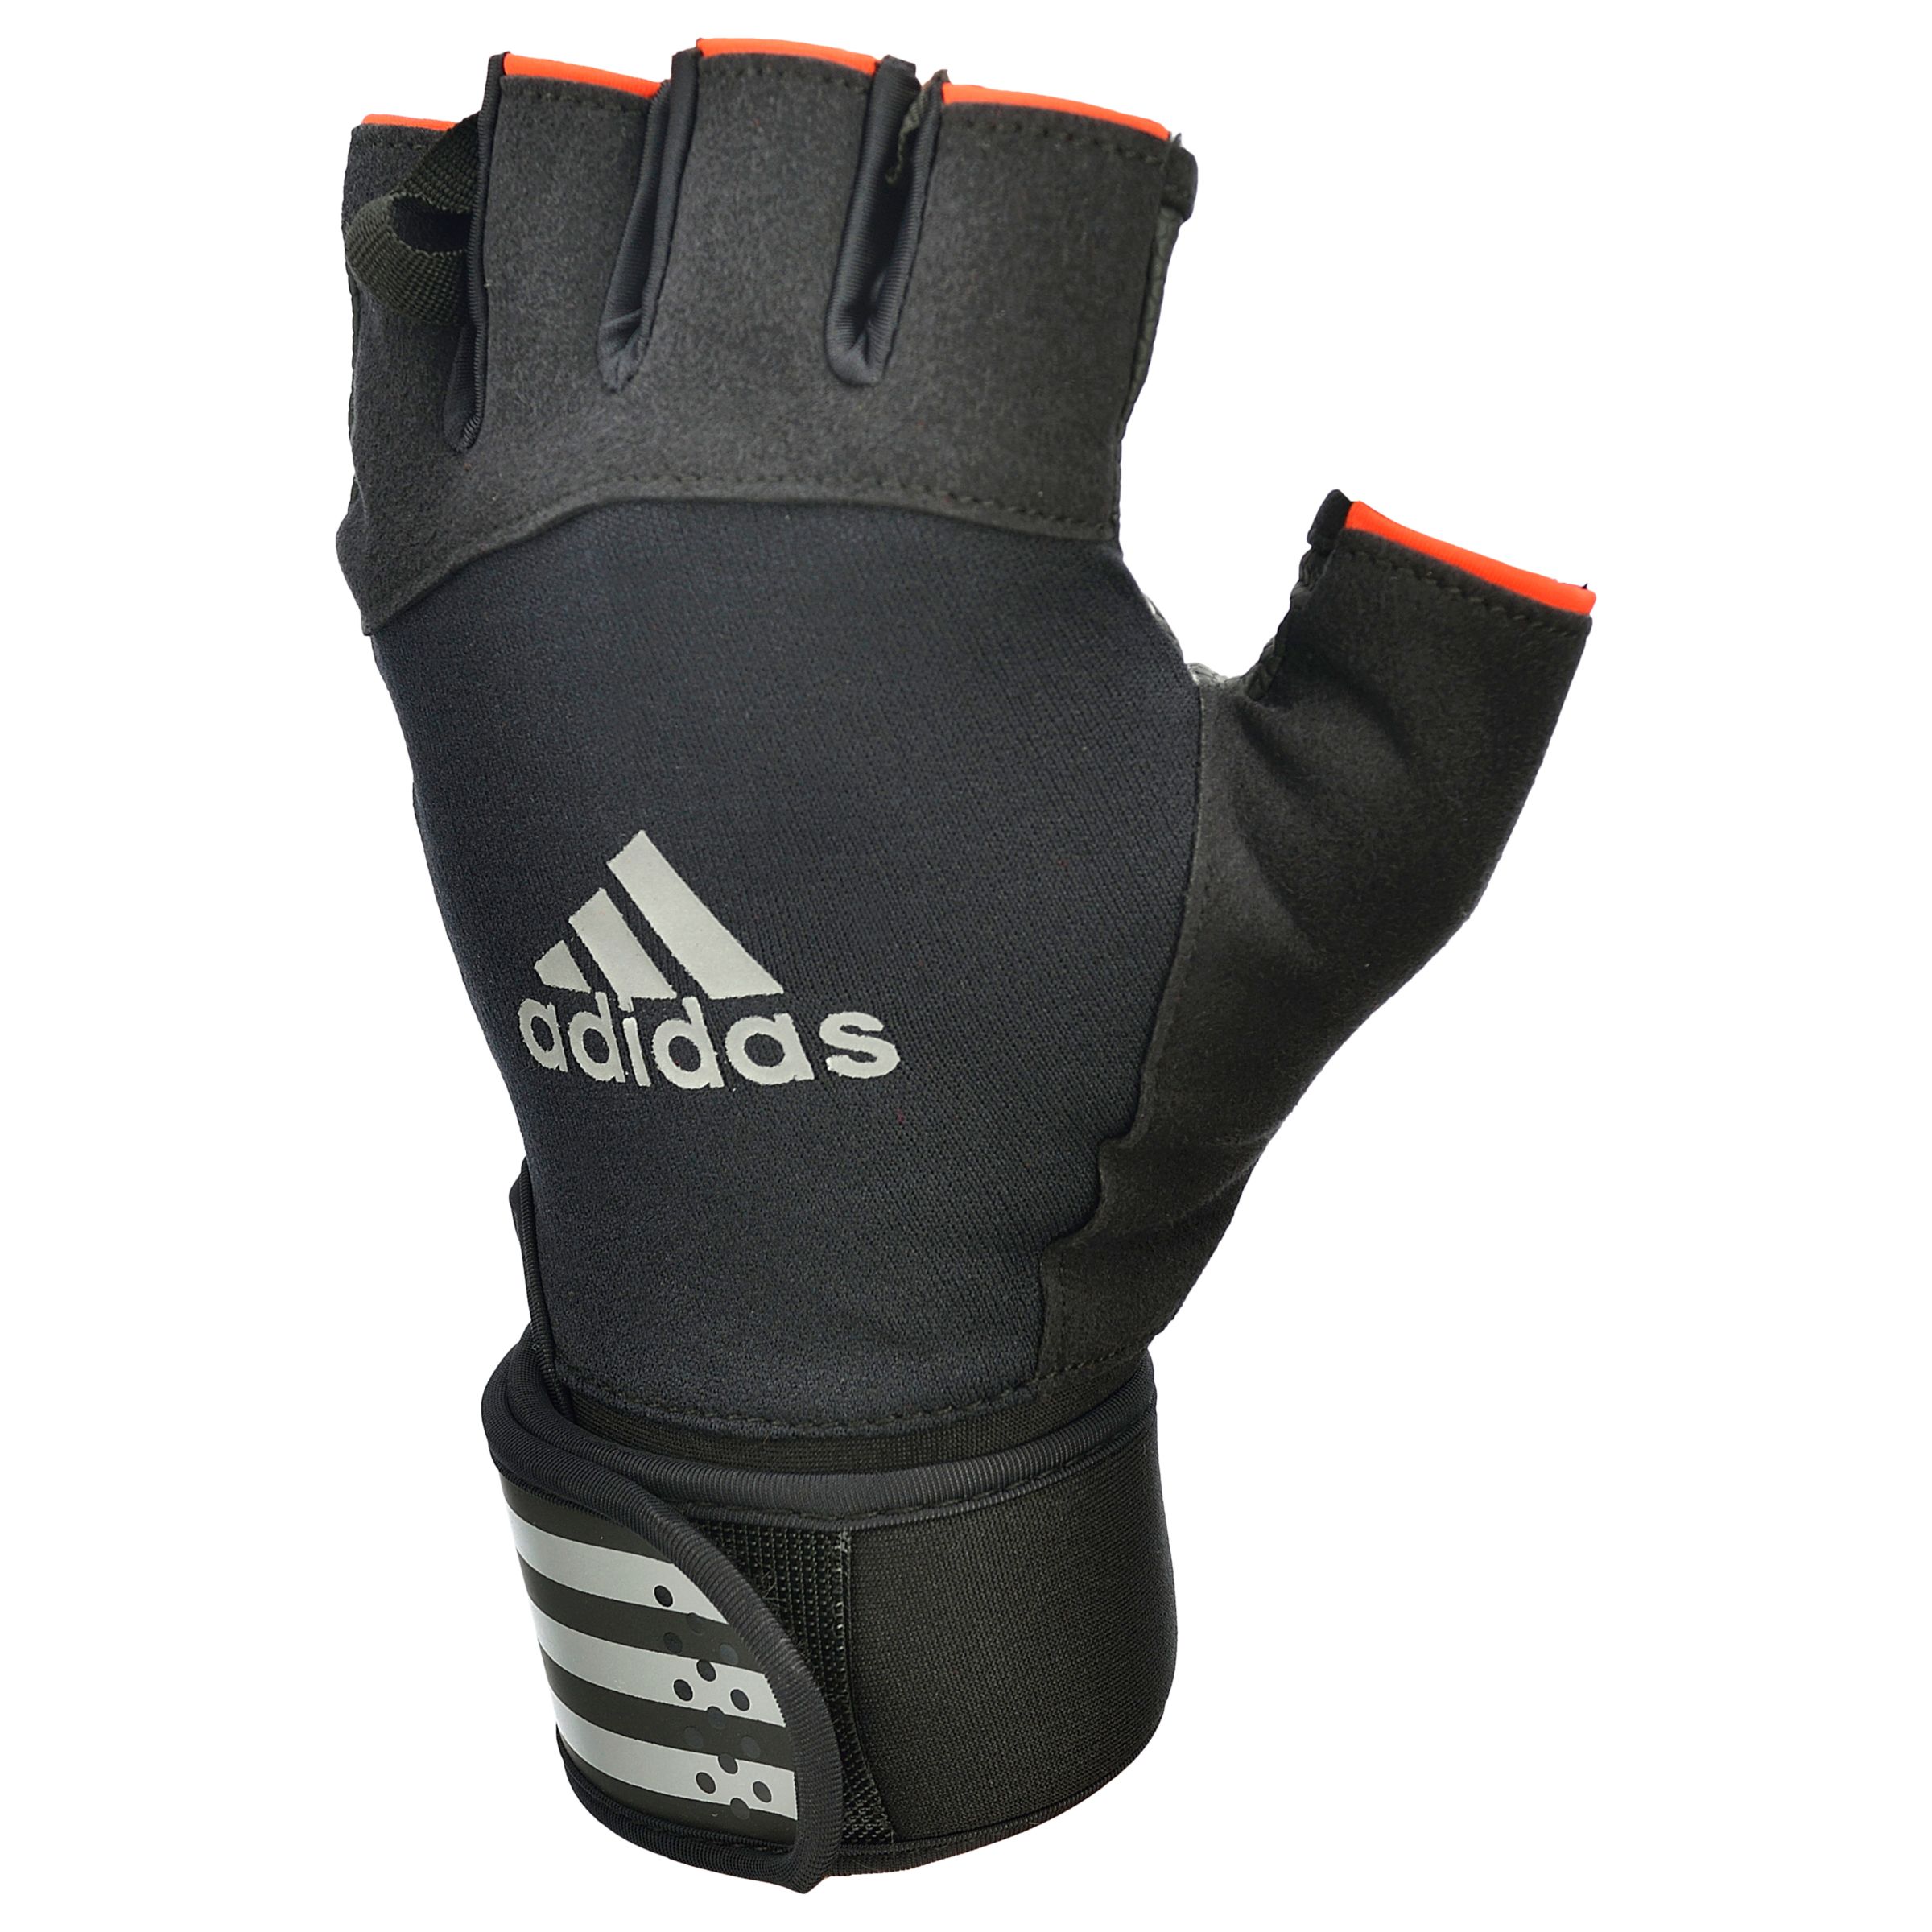 adidas weight gloves